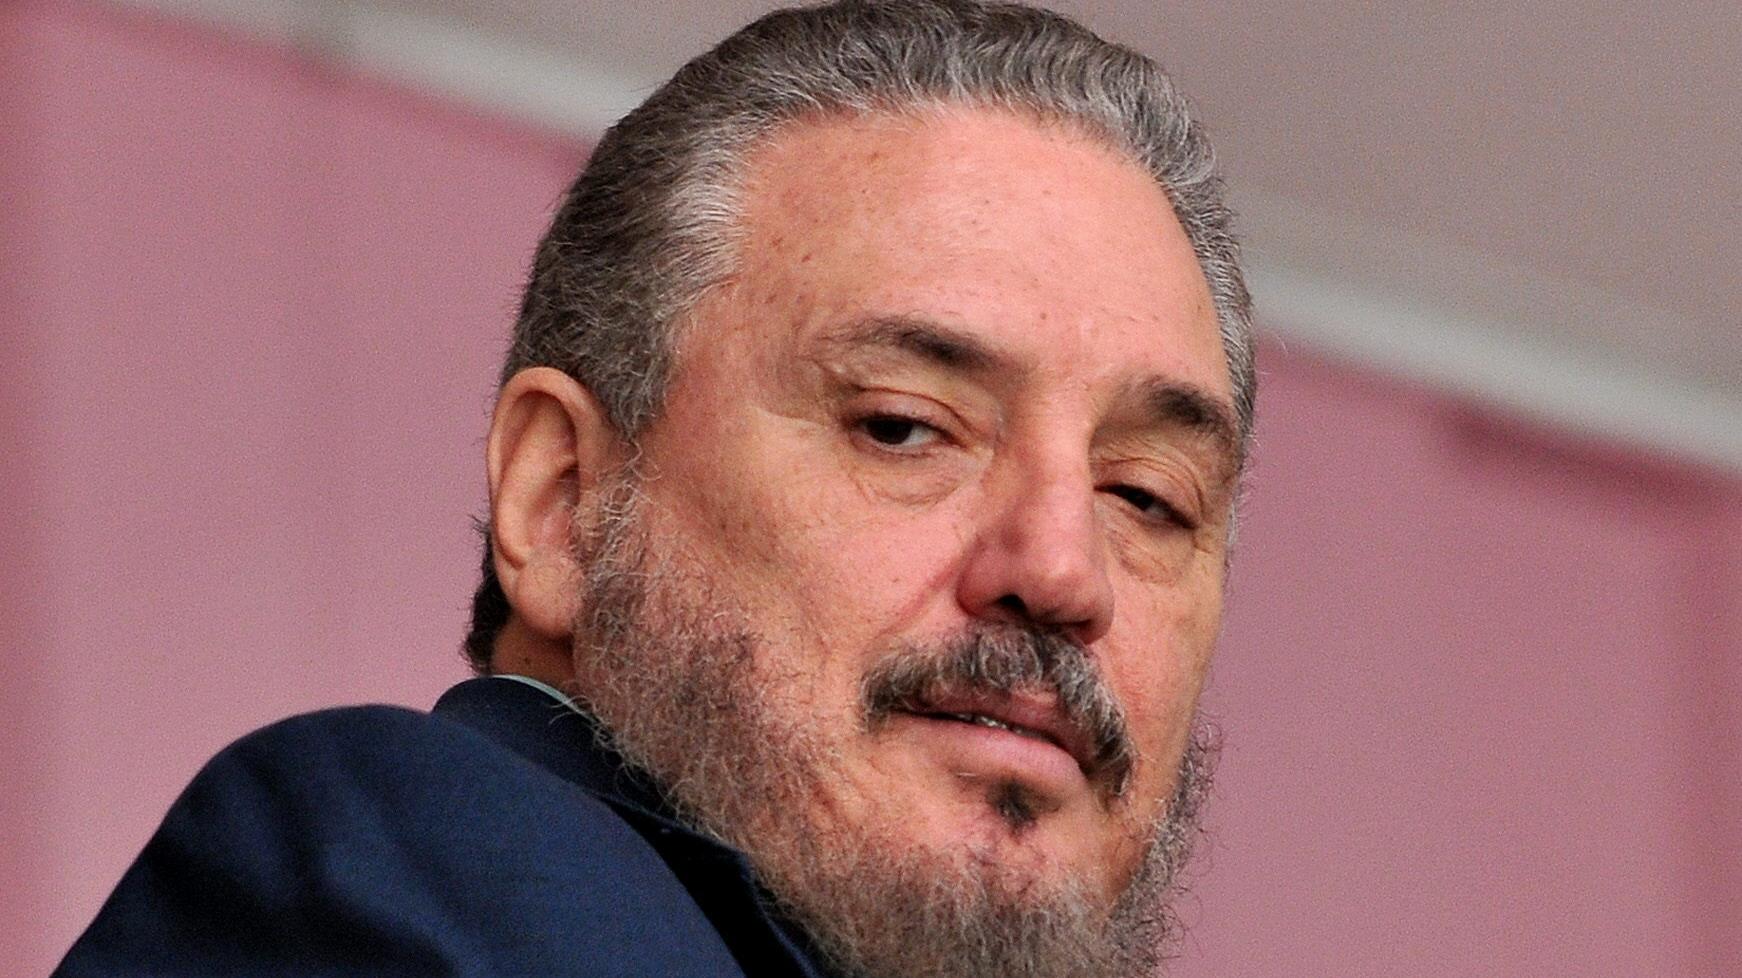 Fidel Castro Díaz-Balart, era el único hijo nacido del matrimonio de Fidel Castro con Mirtha Díaz-Balart.